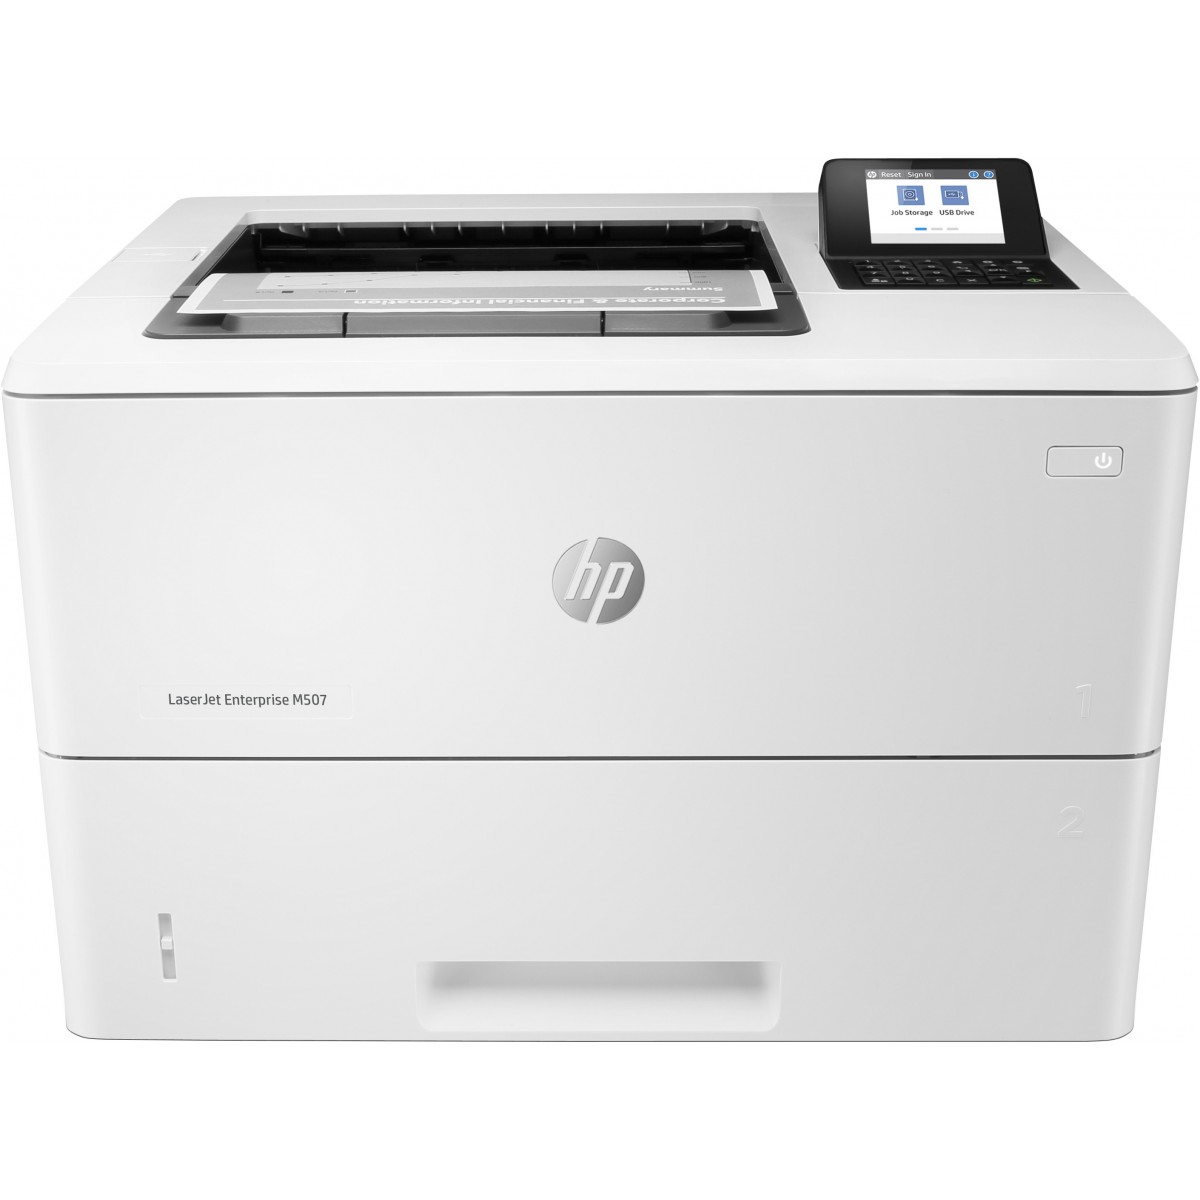 HP LaserJet Enterprise M507dn - Laser - 1200 x 1200 DPI - A4 - 43 ppm - Duplex printing - Network ready